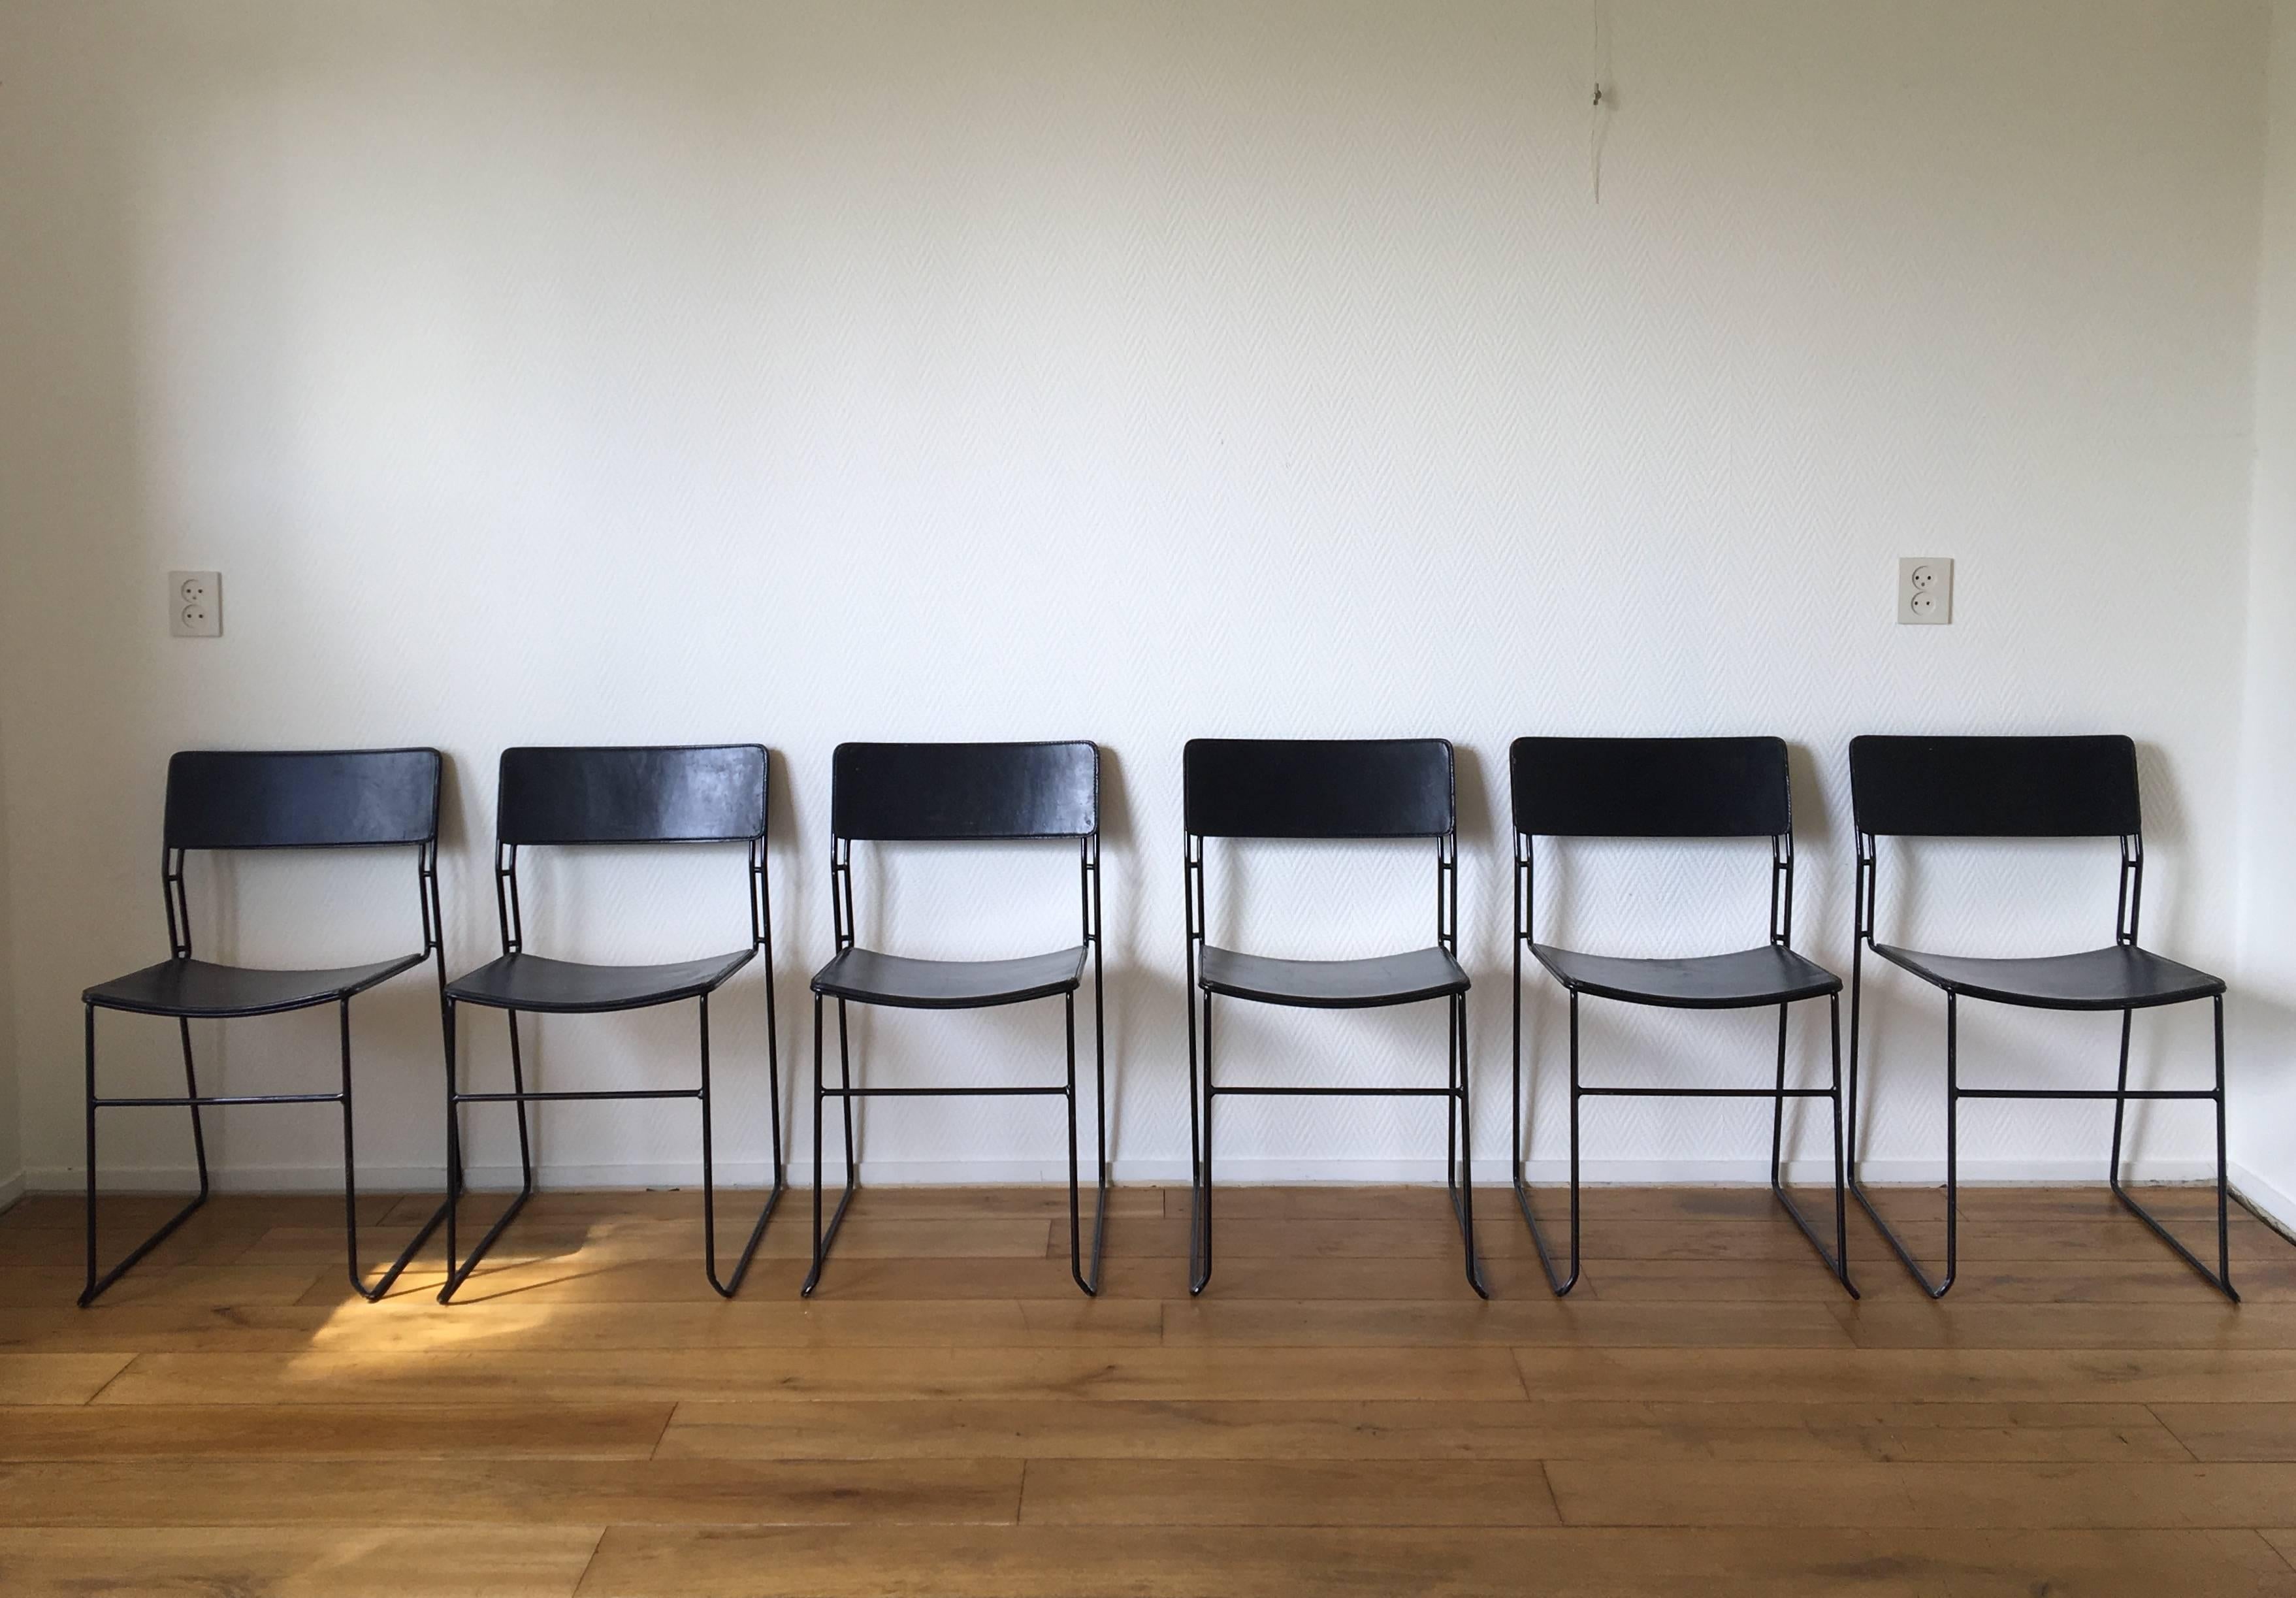 Rare ensemble minimaliste de six chaises de salle à manger, fabriqué par Arrben, Italie. Les chaises sont dotées d'une base en métal lourd émaillé noir et d'un épais revêtement en cuir noir. Bien que les chaises soient empilables et empilées de